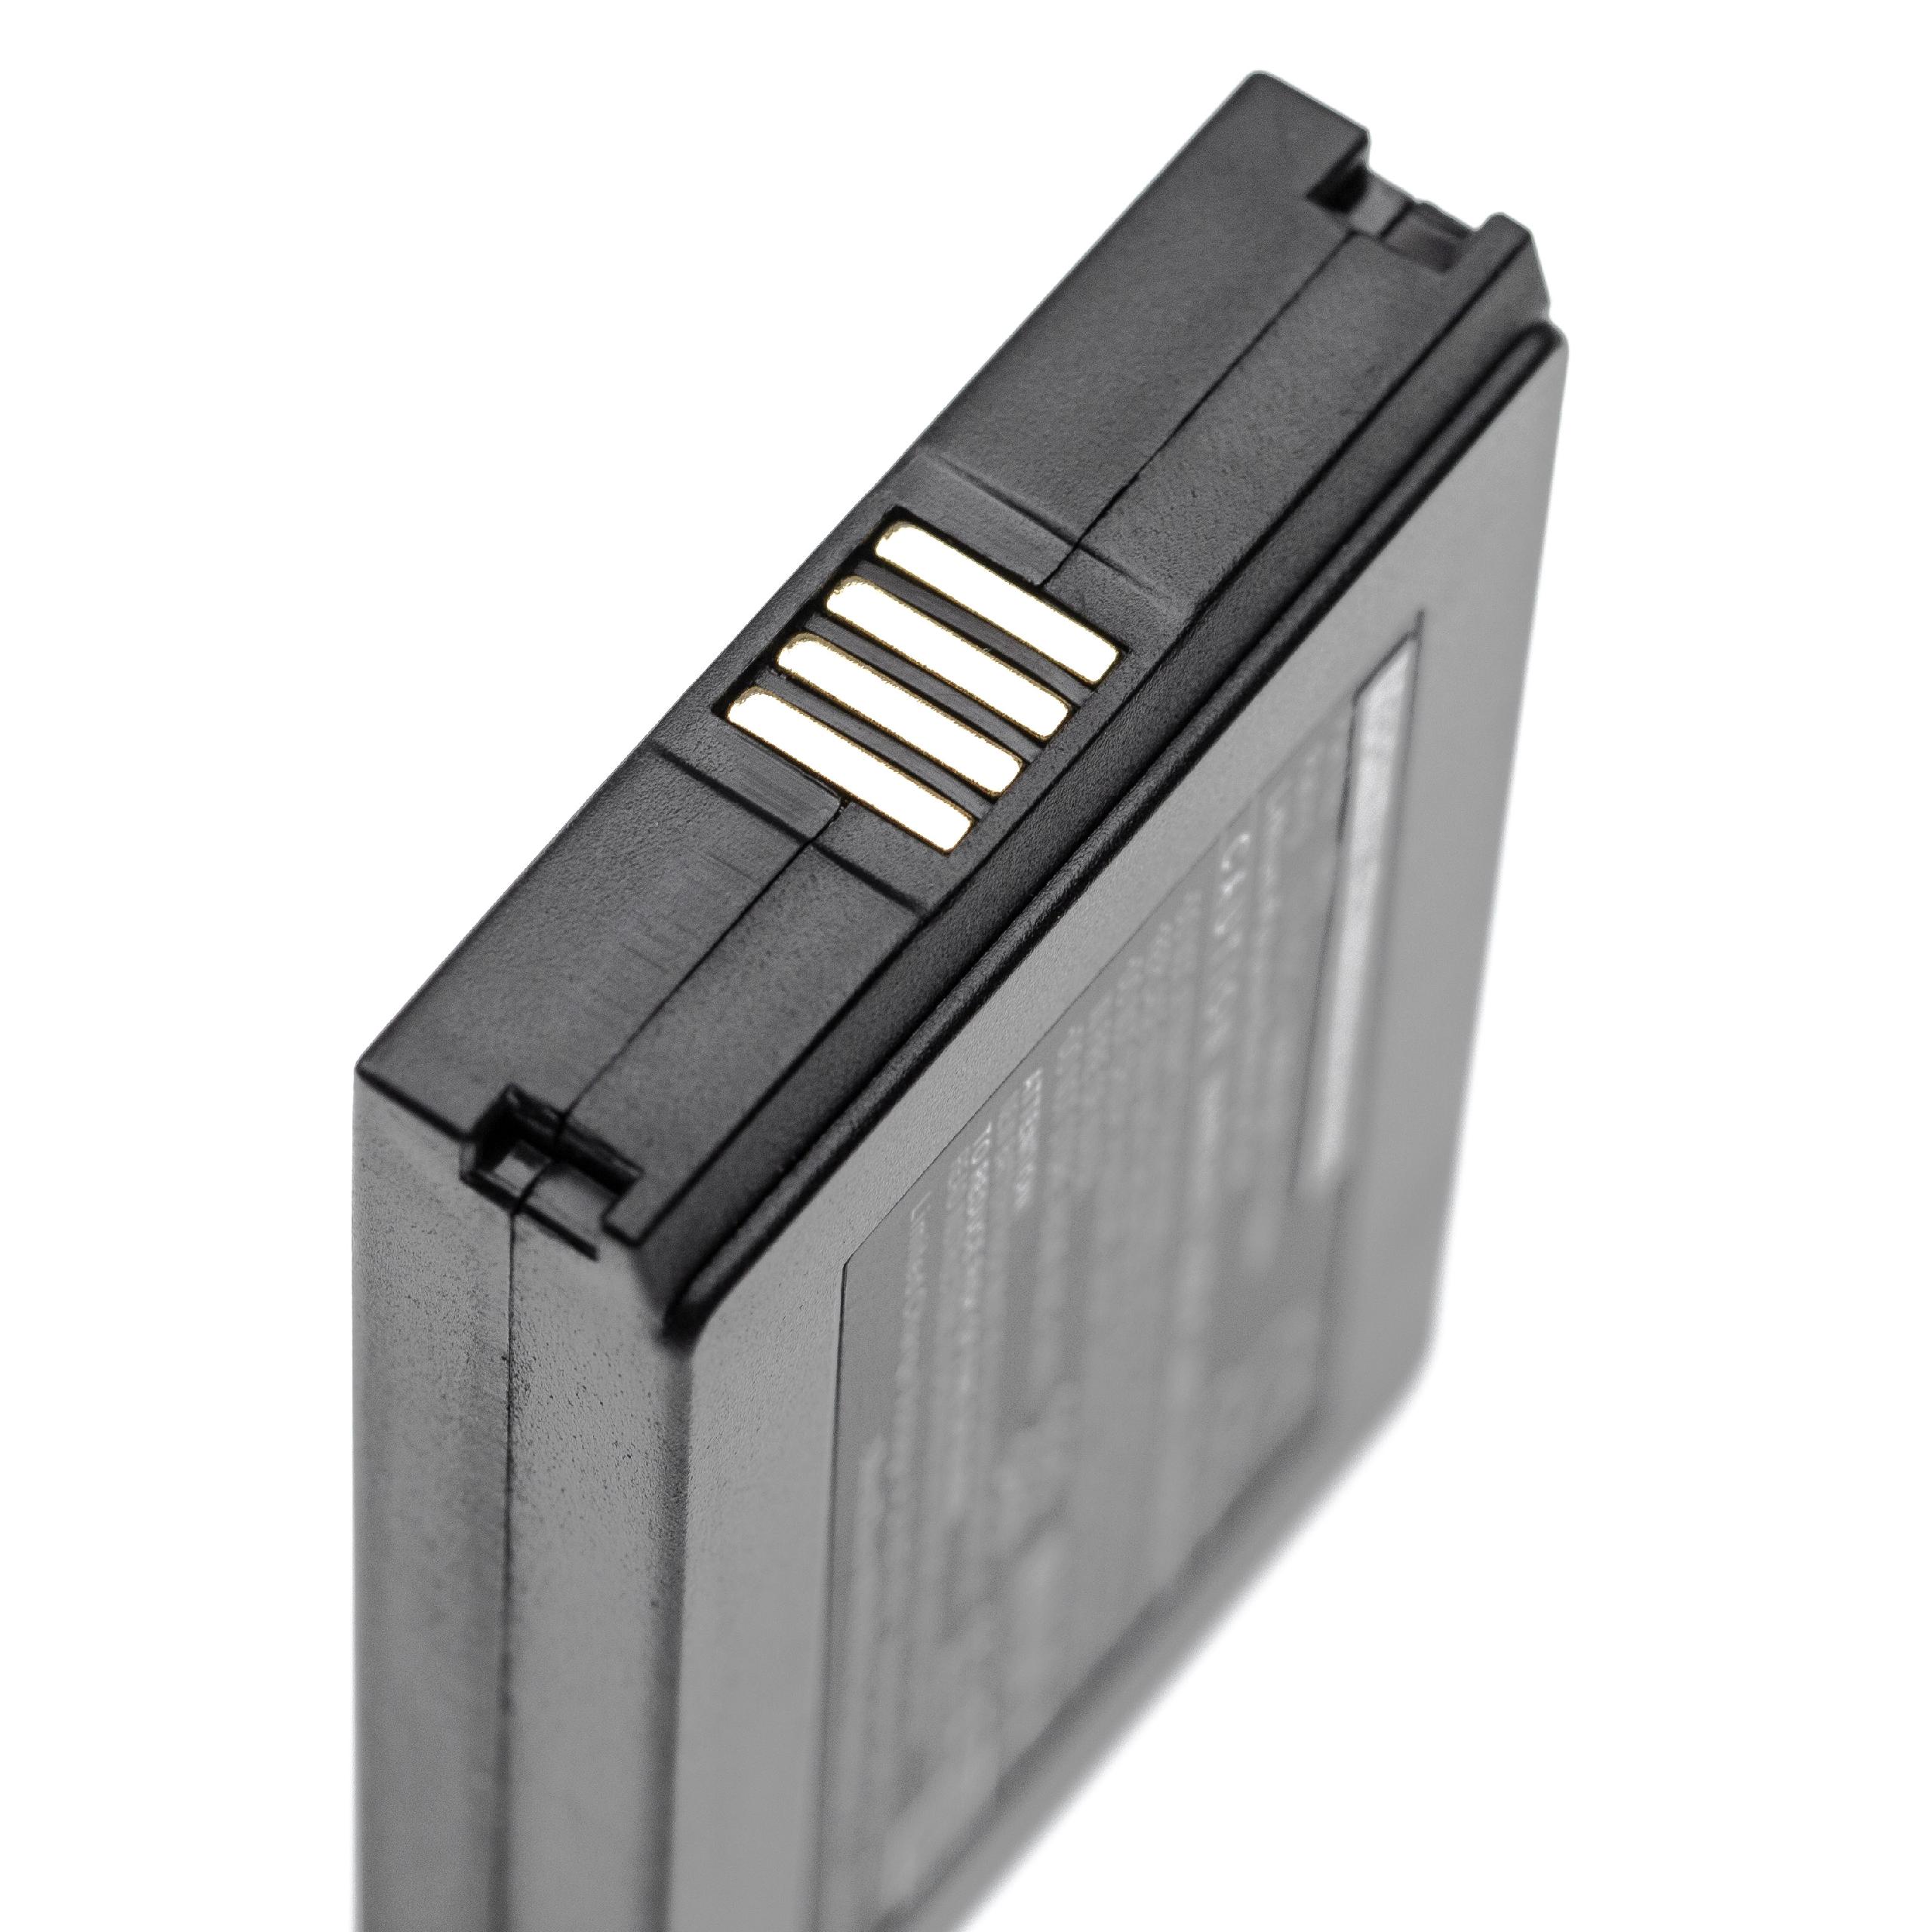 Batterie remplace Vectron B60 pour scanner de code-barre - 3000mAh 3,7V Li-polymère